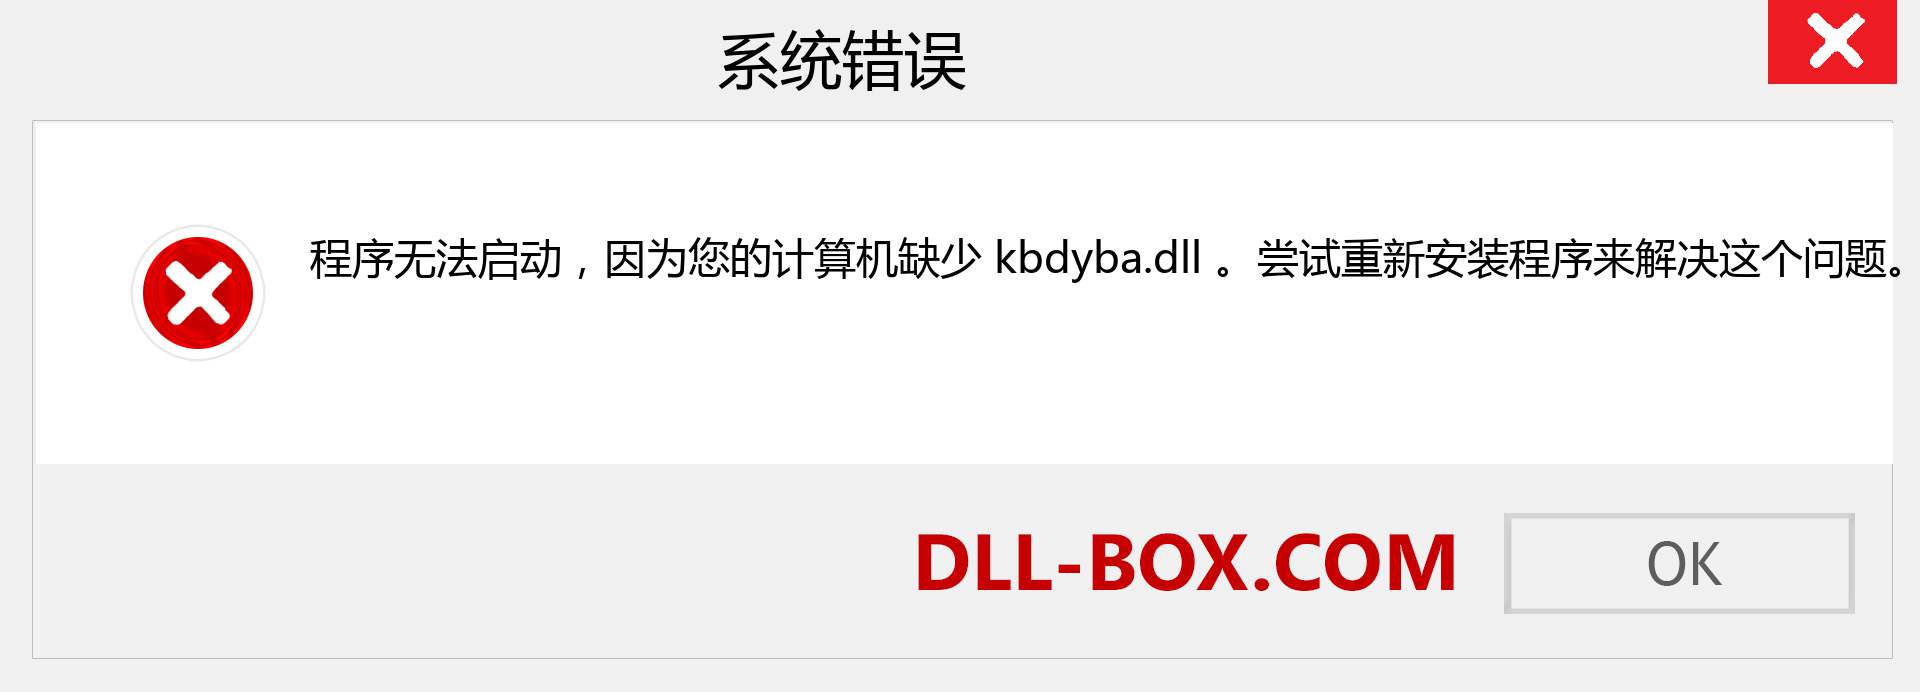 kbdyba.dll 文件丢失？。 适用于 Windows 7、8、10 的下载 - 修复 Windows、照片、图像上的 kbdyba dll 丢失错误